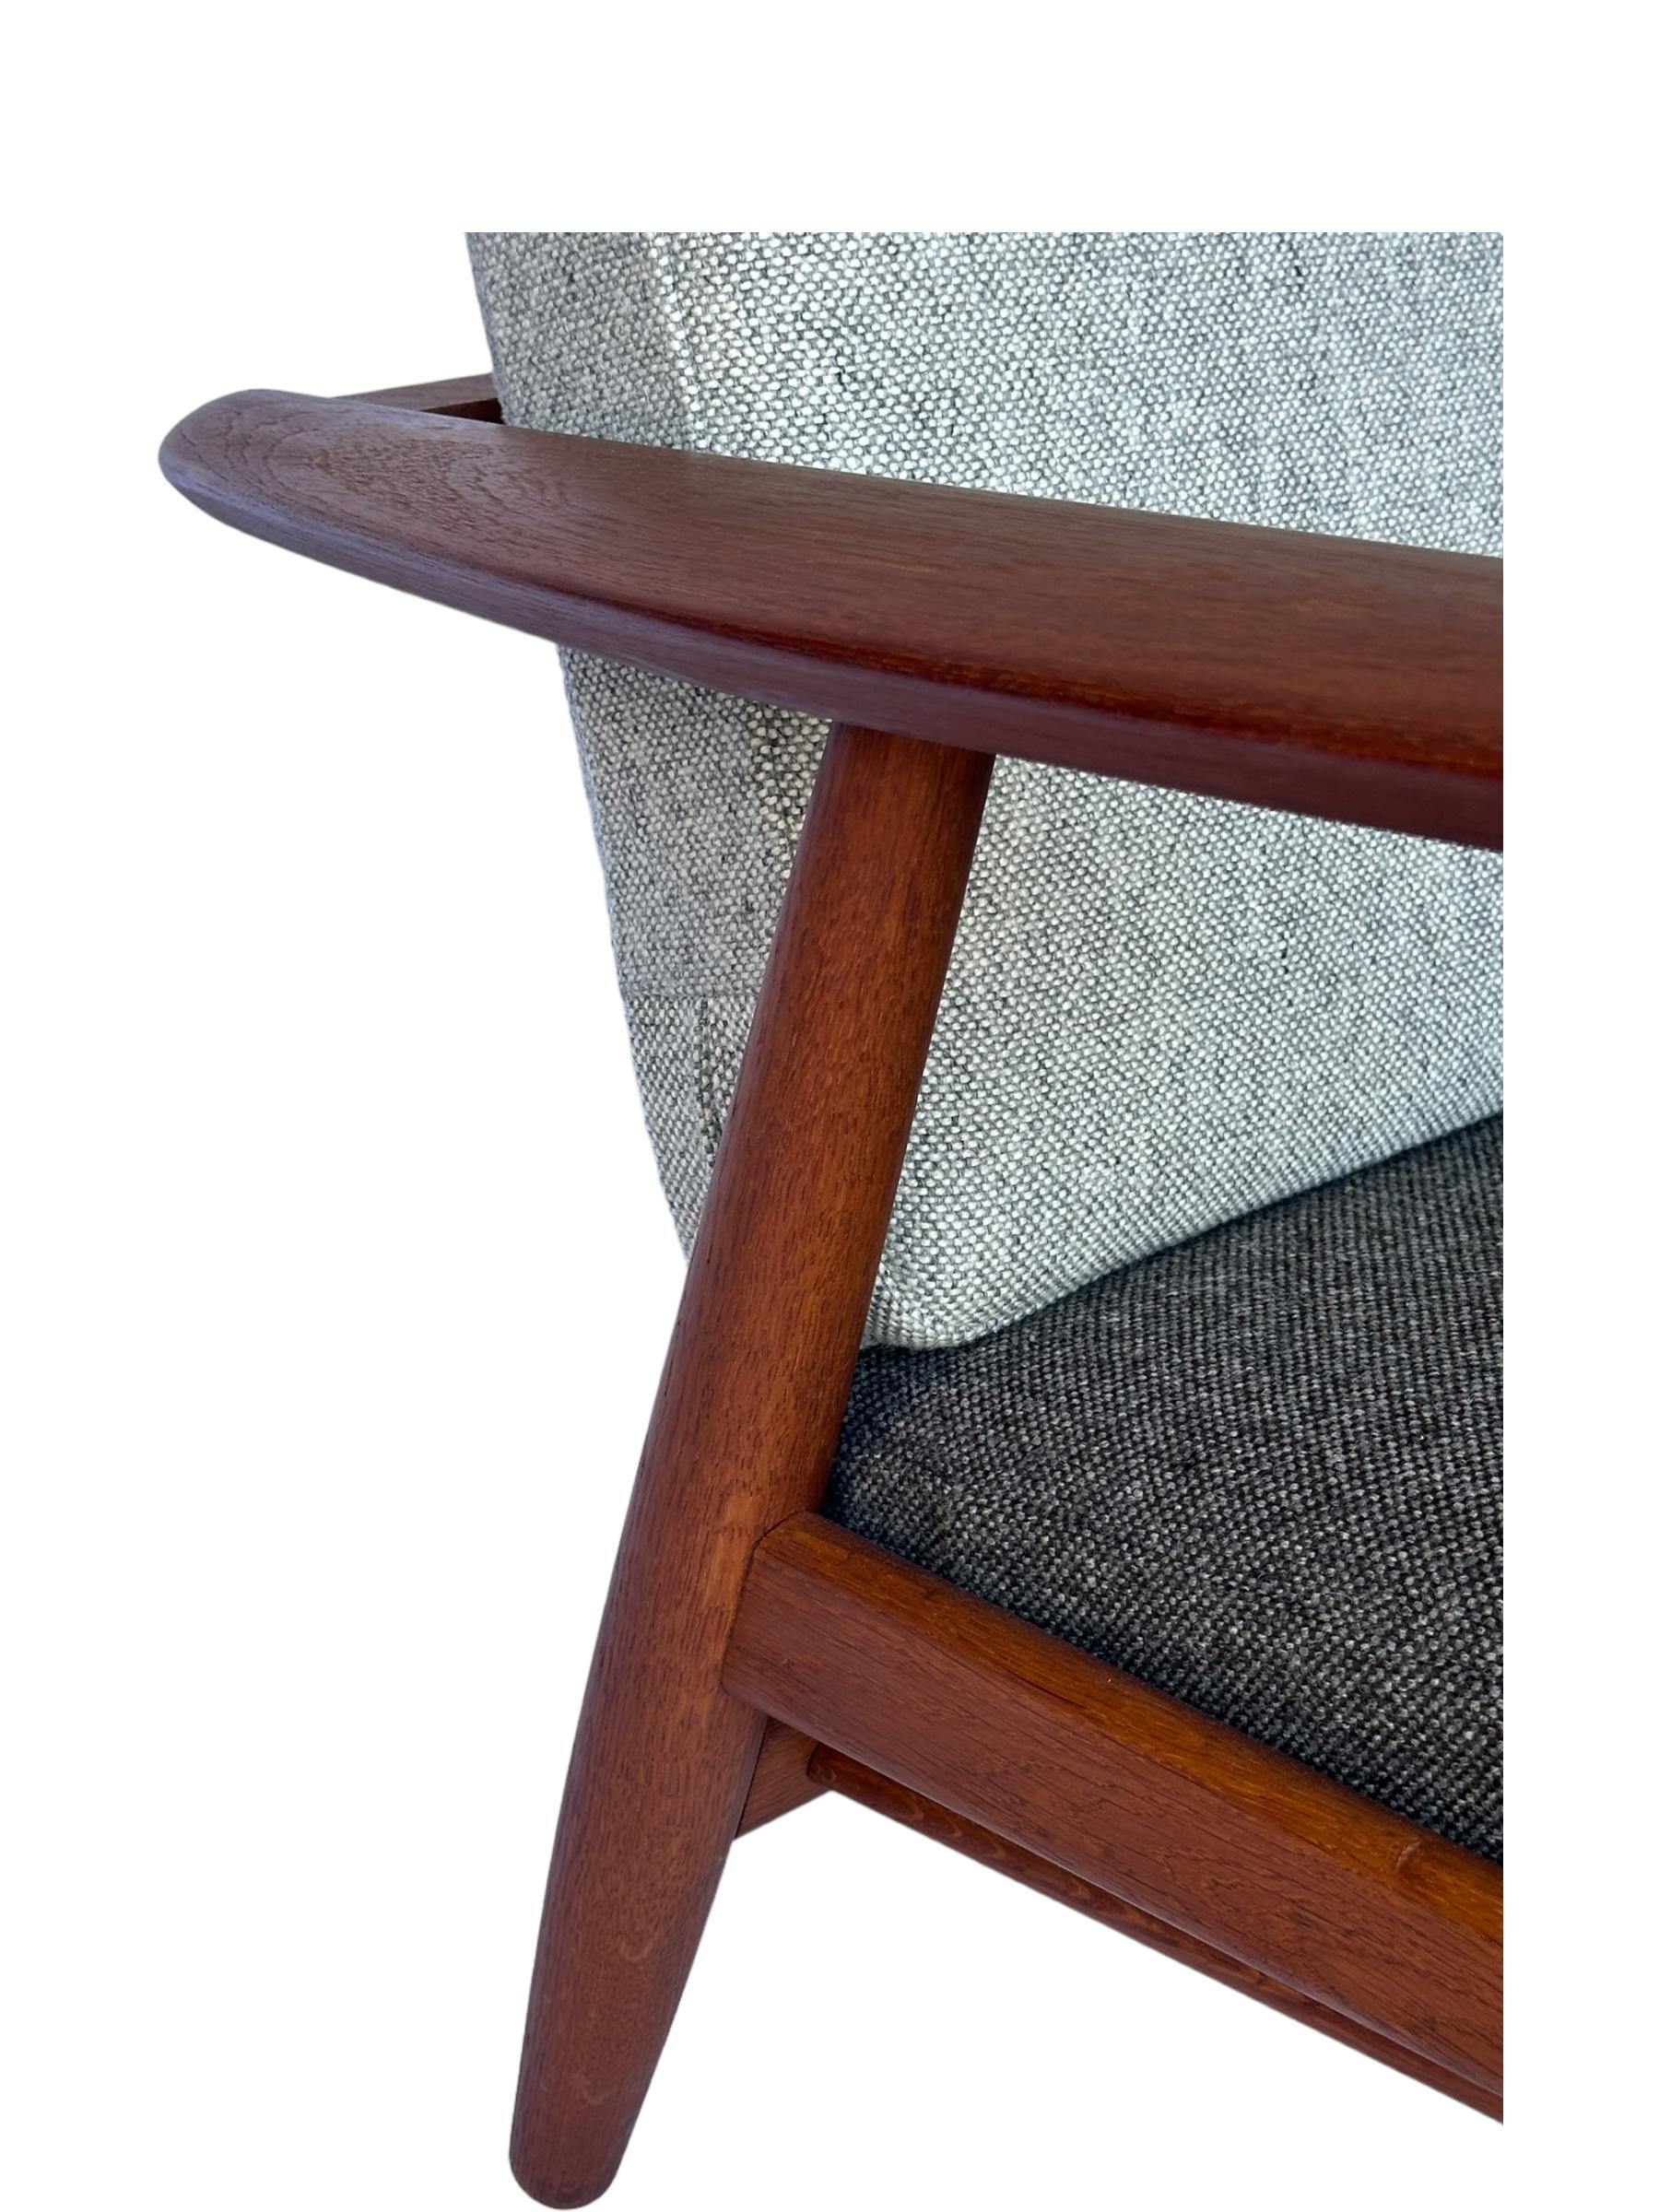 Hans J. Wegner for Getama Signed Sofa with new Mataram Upholstery For Sale 8